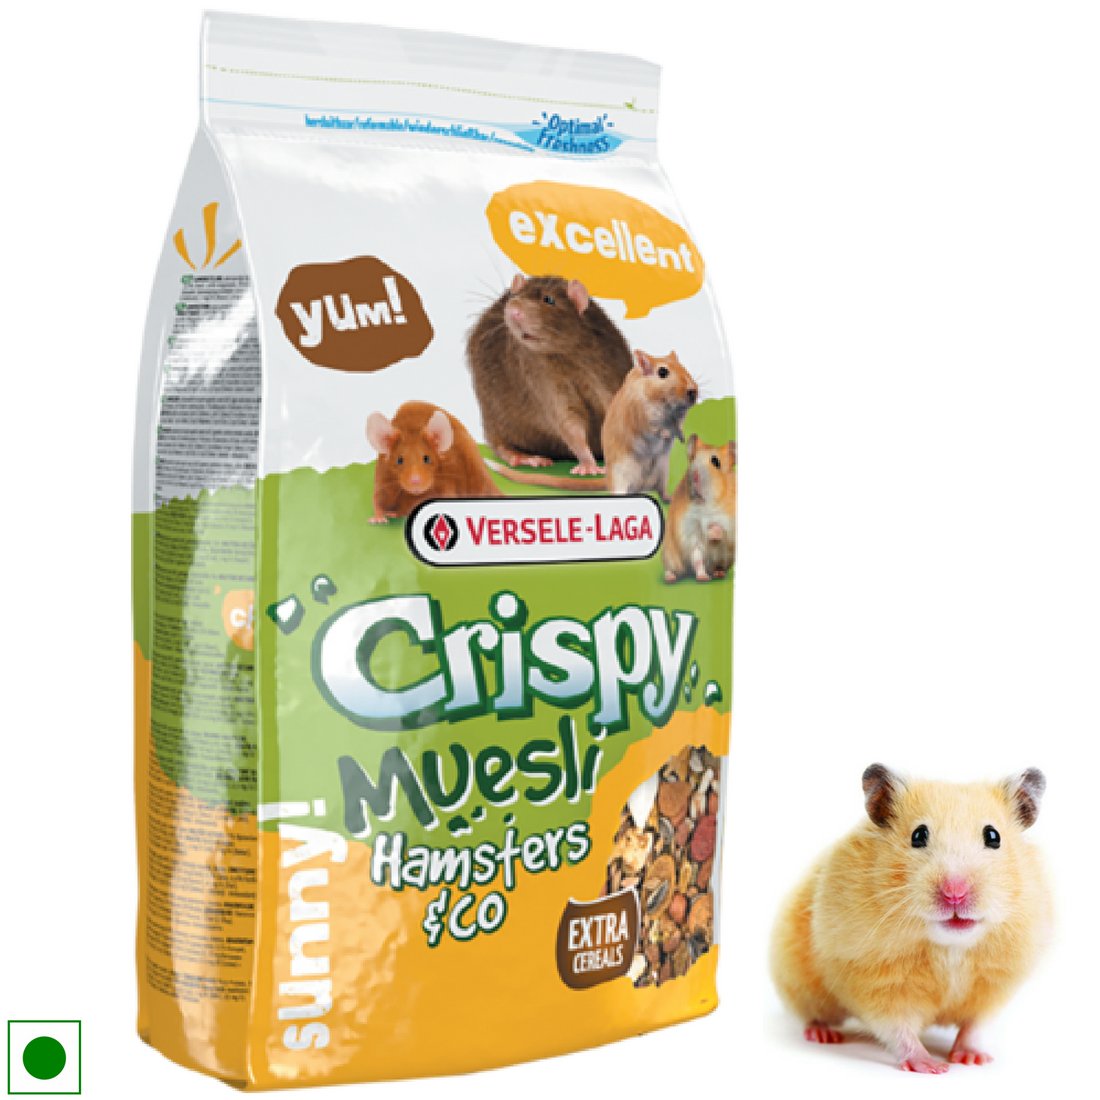 Versele Laga Hamsters and Co Crispy Muesli Food (1kg)